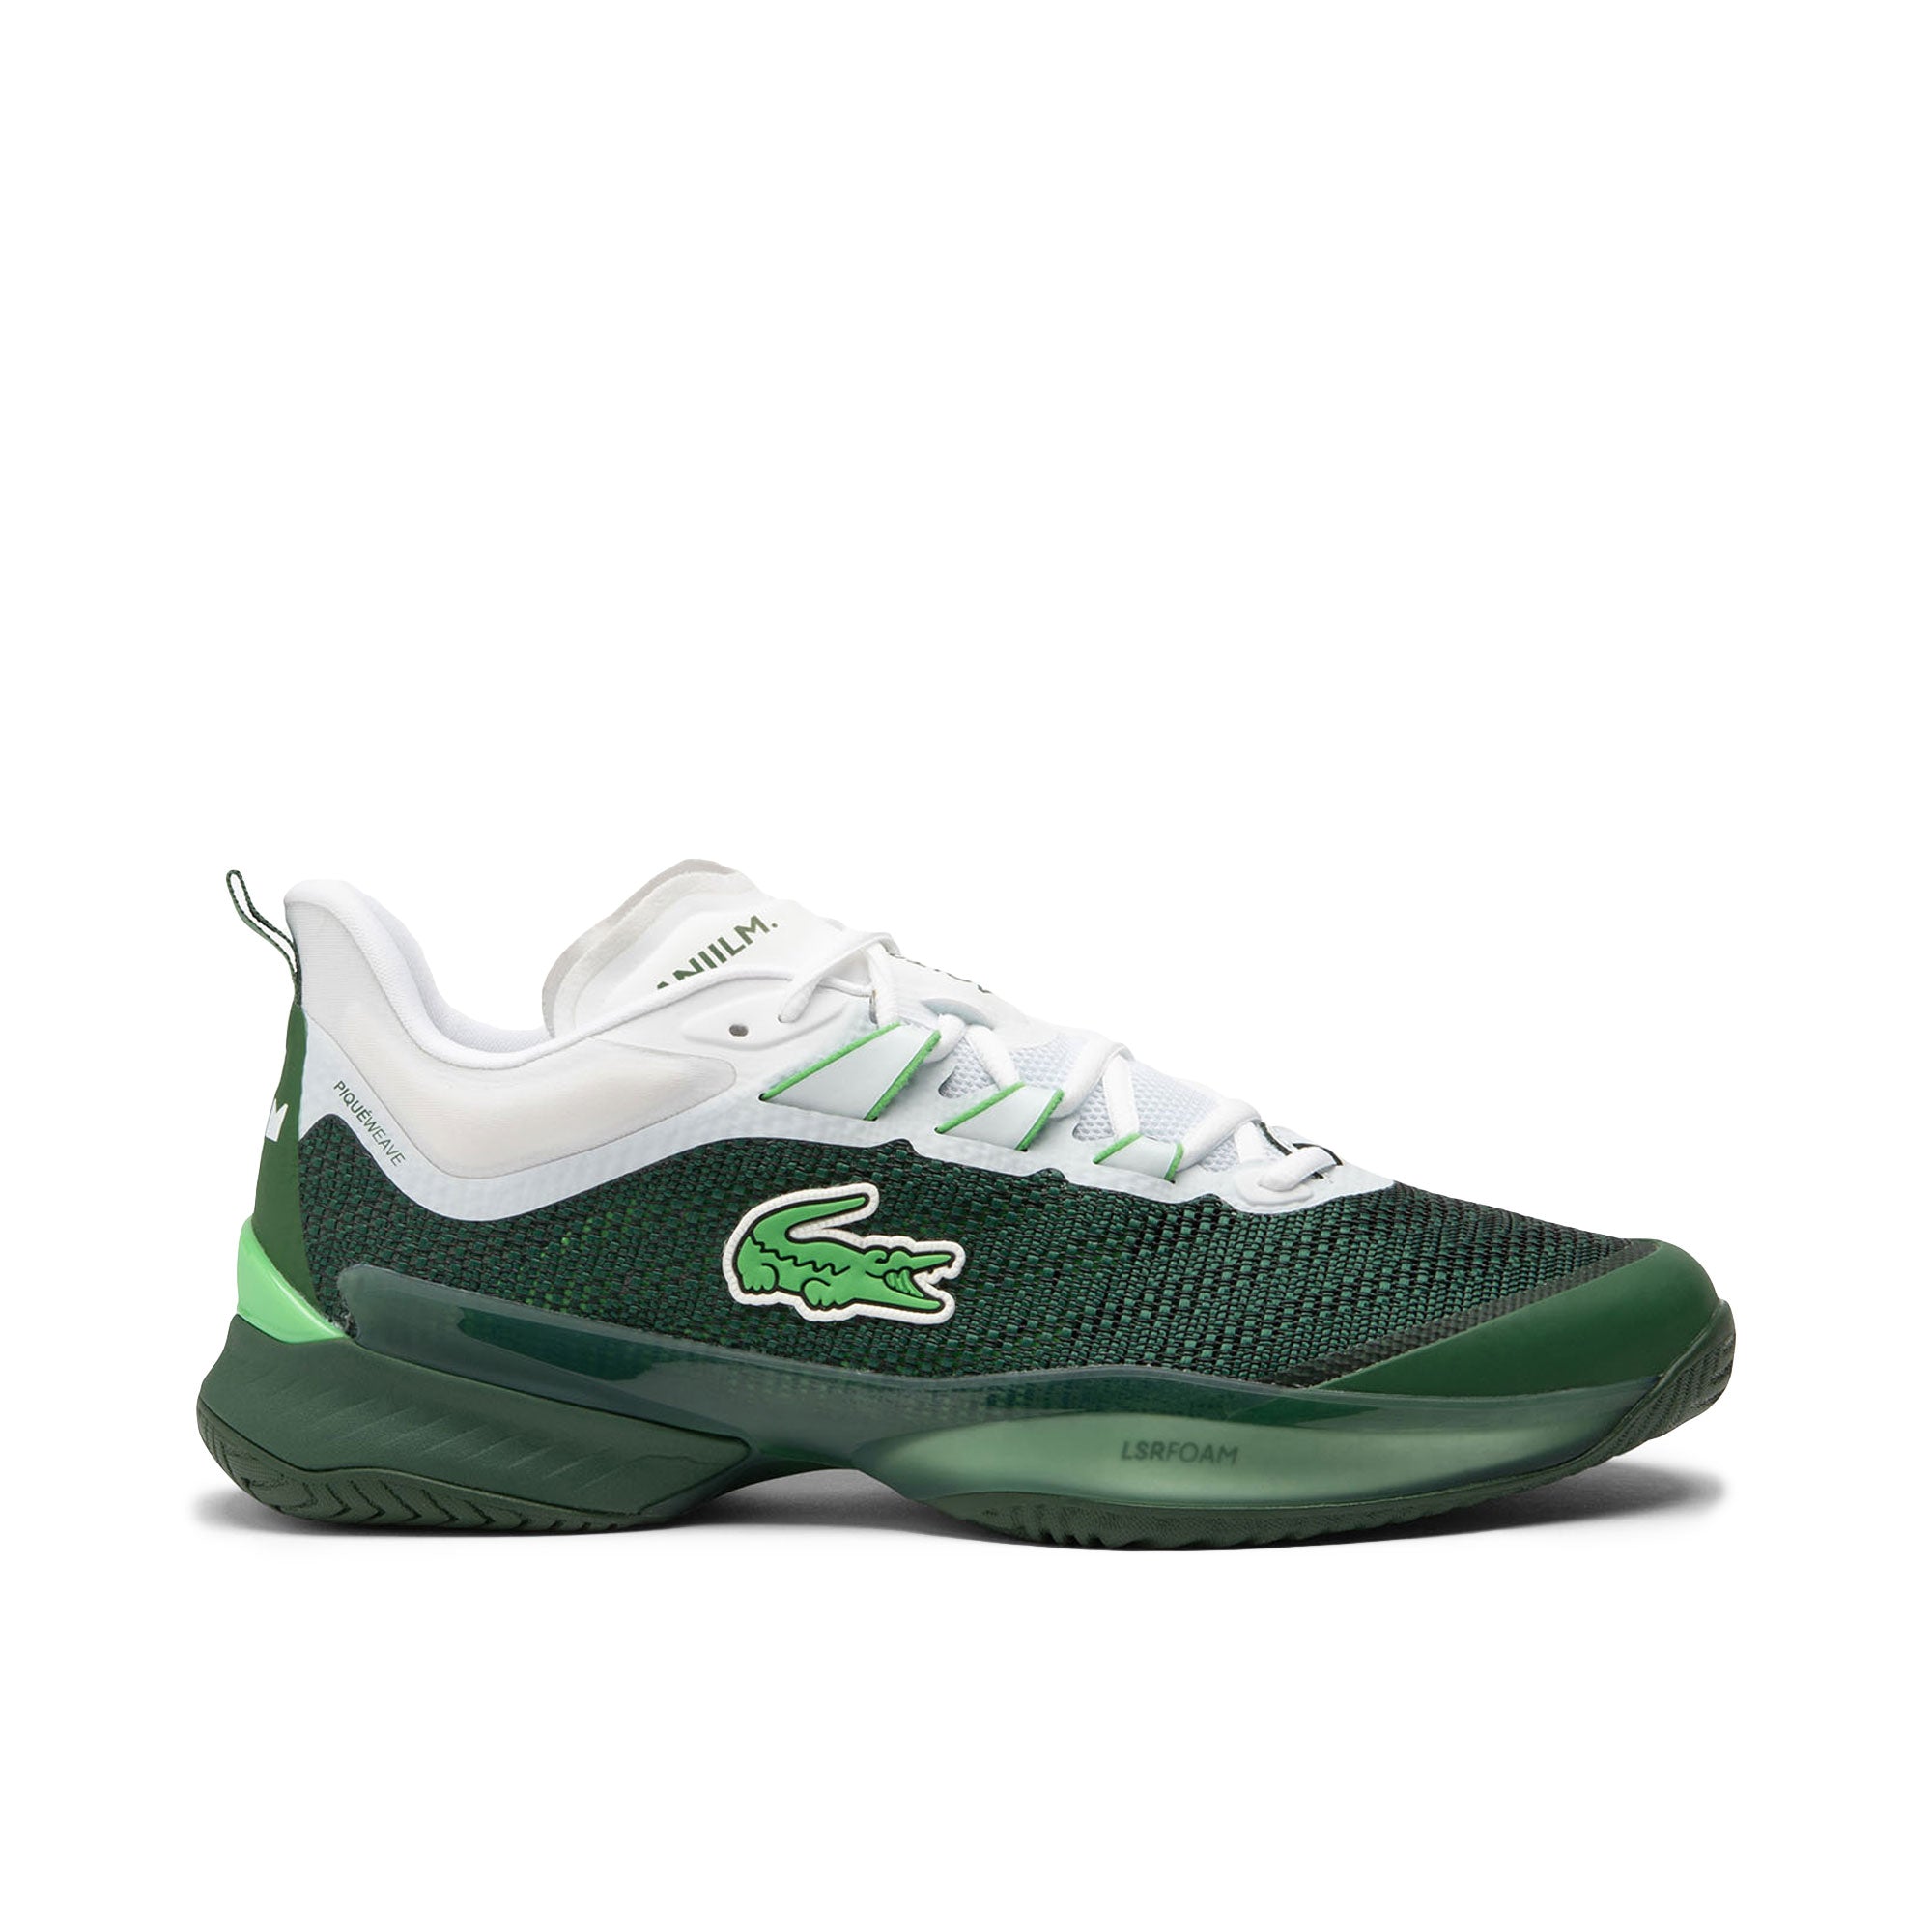 Lacoste x Daniil Medvedev AG-LT23 Ultra Tennis Shoes (Men's) - Dark Green/White